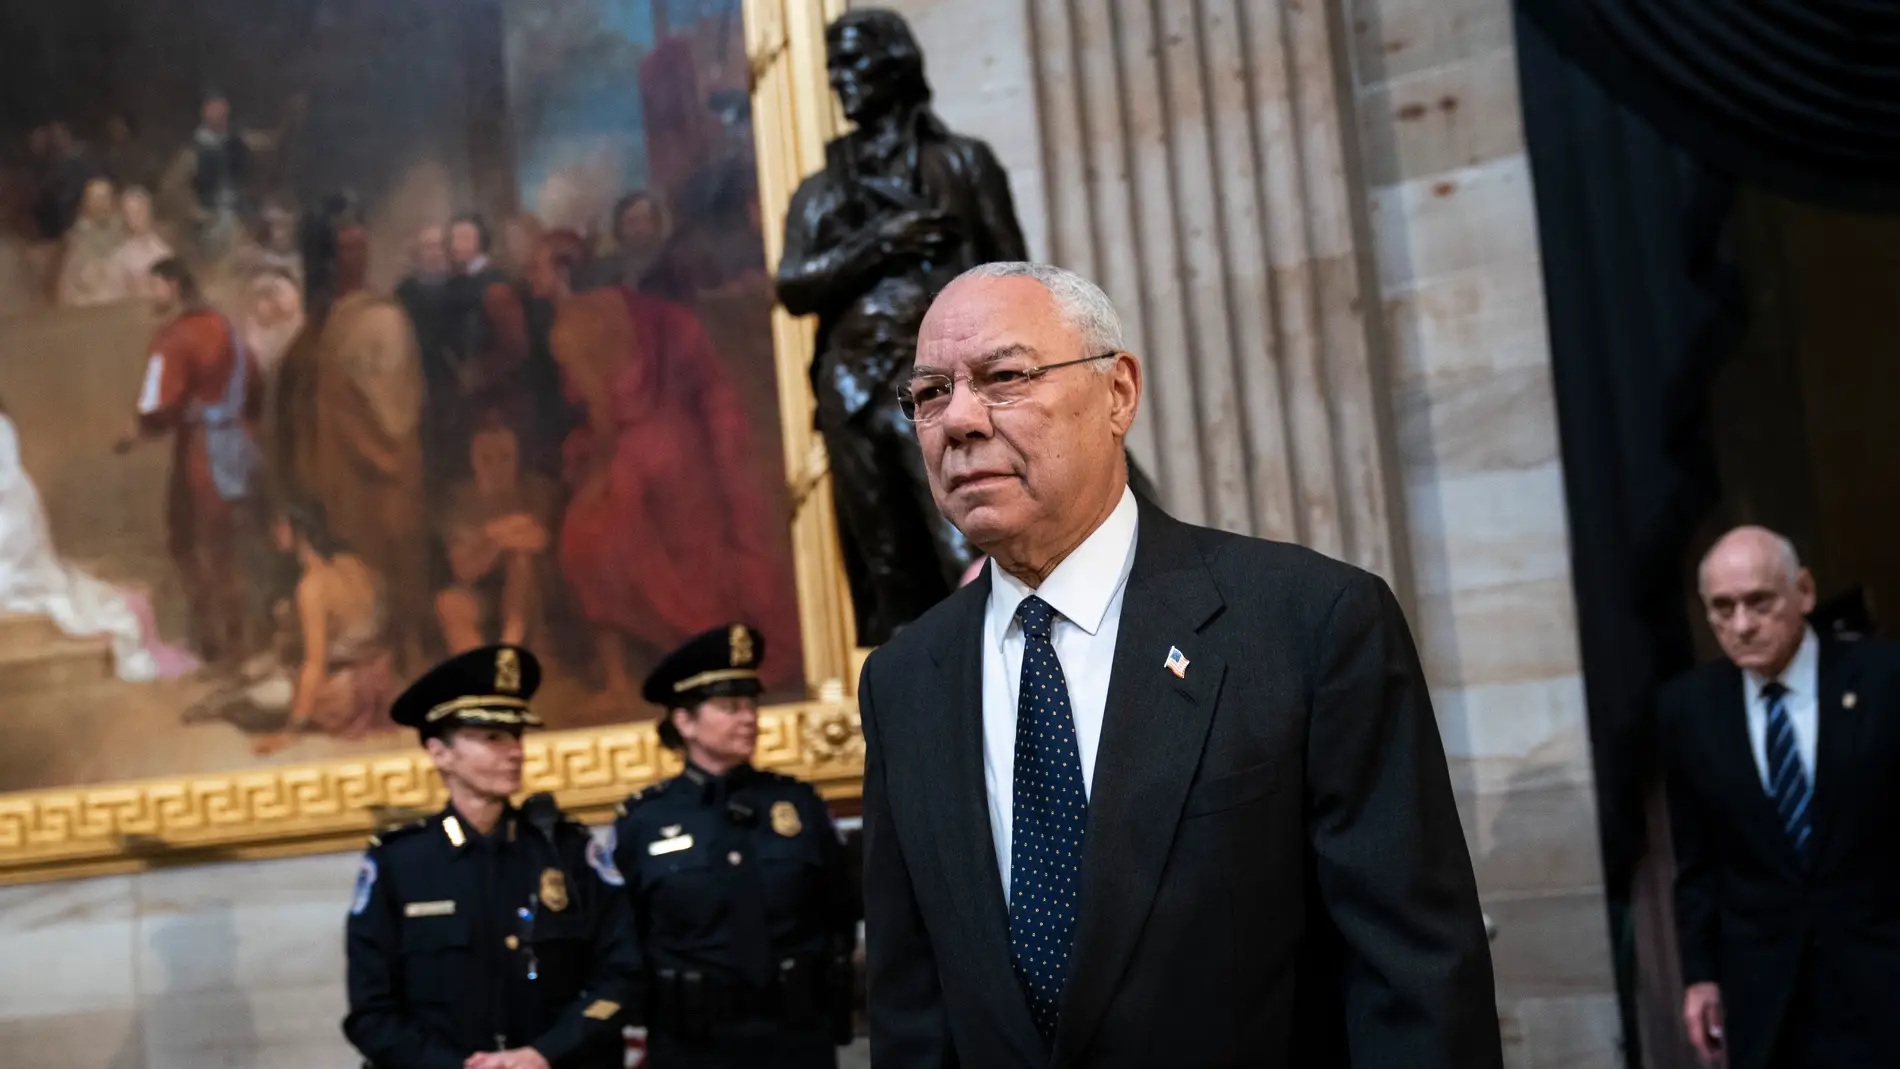 El exsecretario de estado Colin Powell en una imagen de archivo